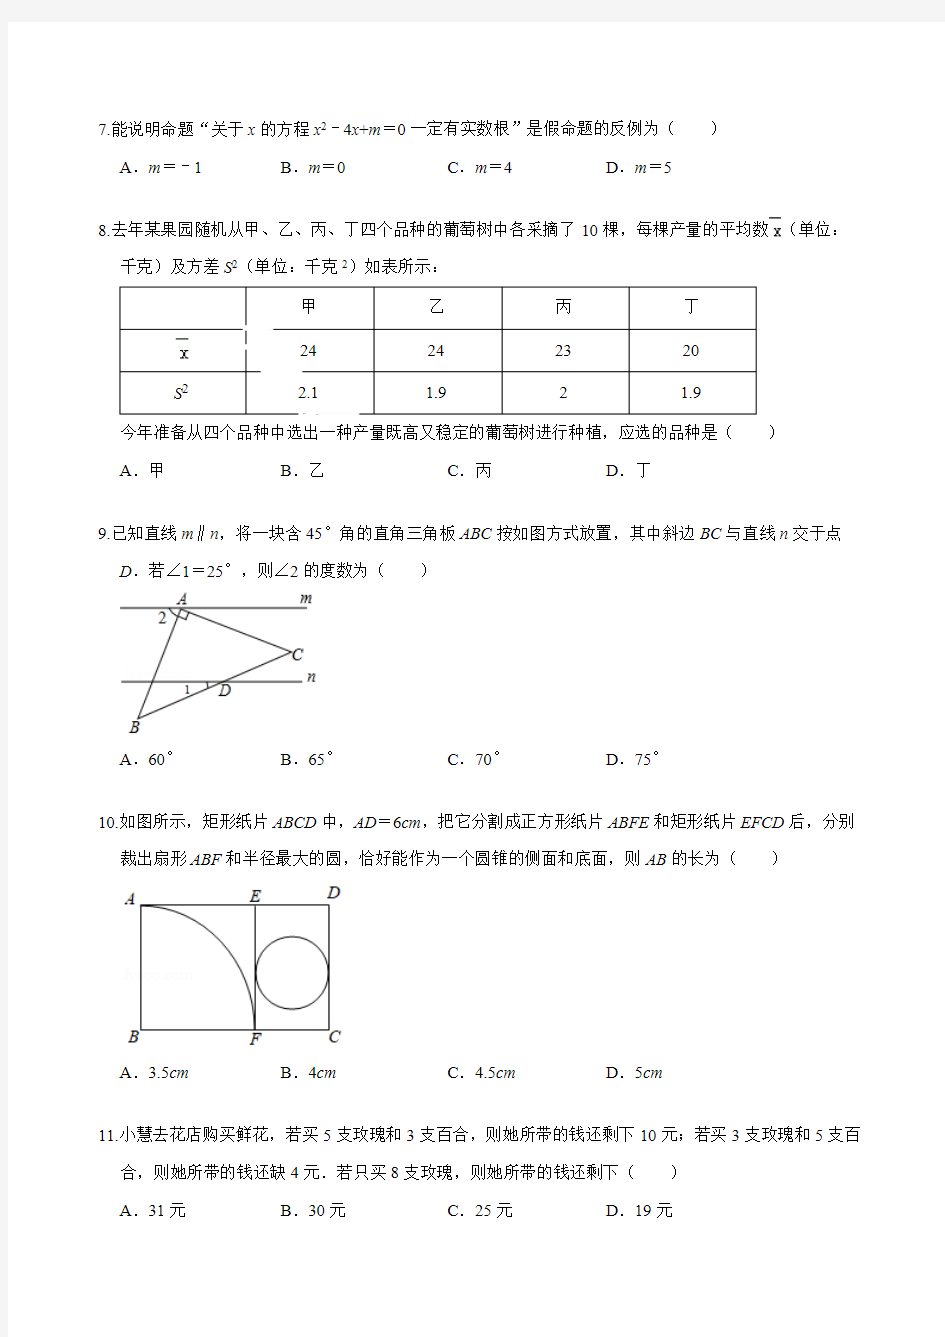 (完整版)2019年宁波中考数学试卷(解析版)